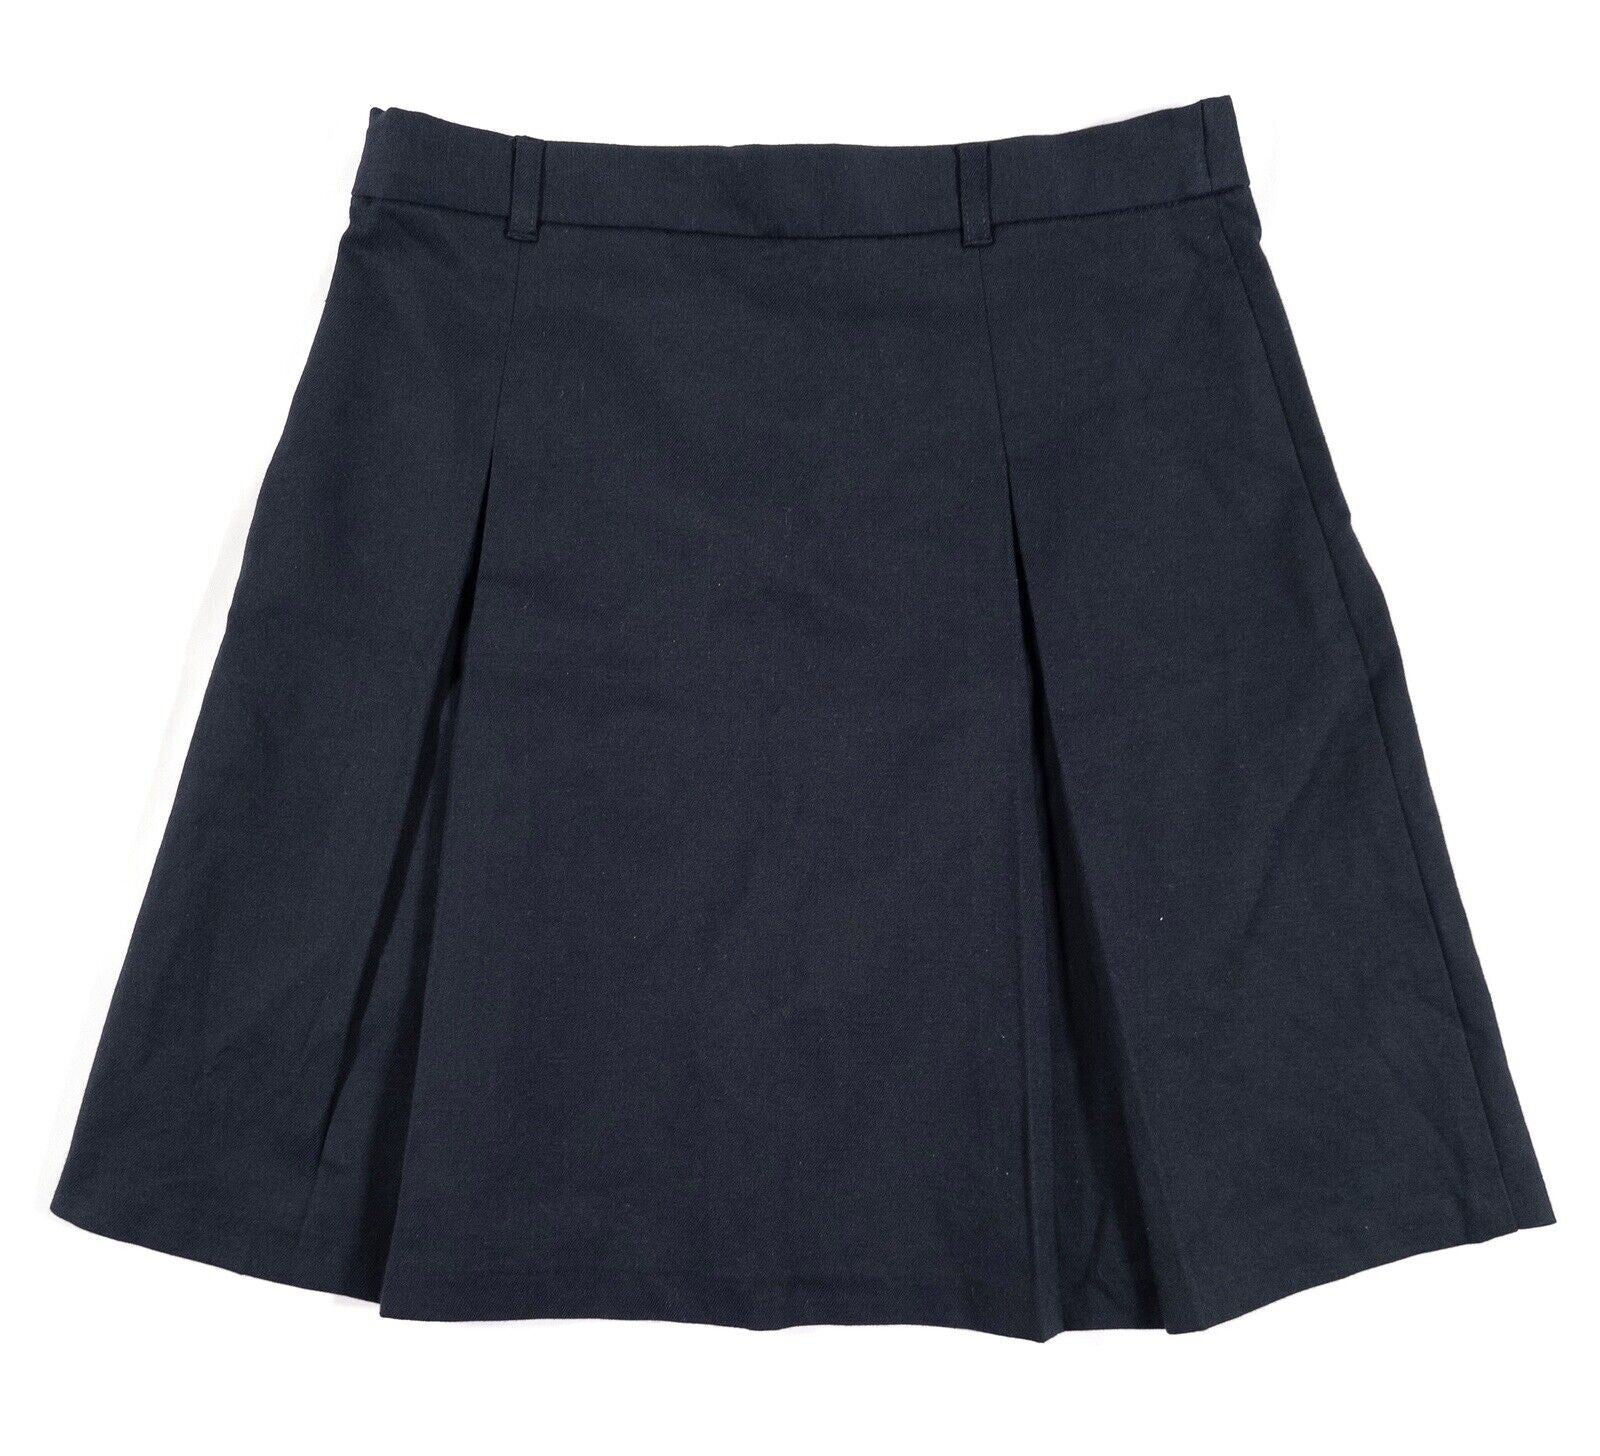 UNITED COLOURS OF BENETTON Kids Girls School Skirt Navy Blue Size UK 10-11 Years